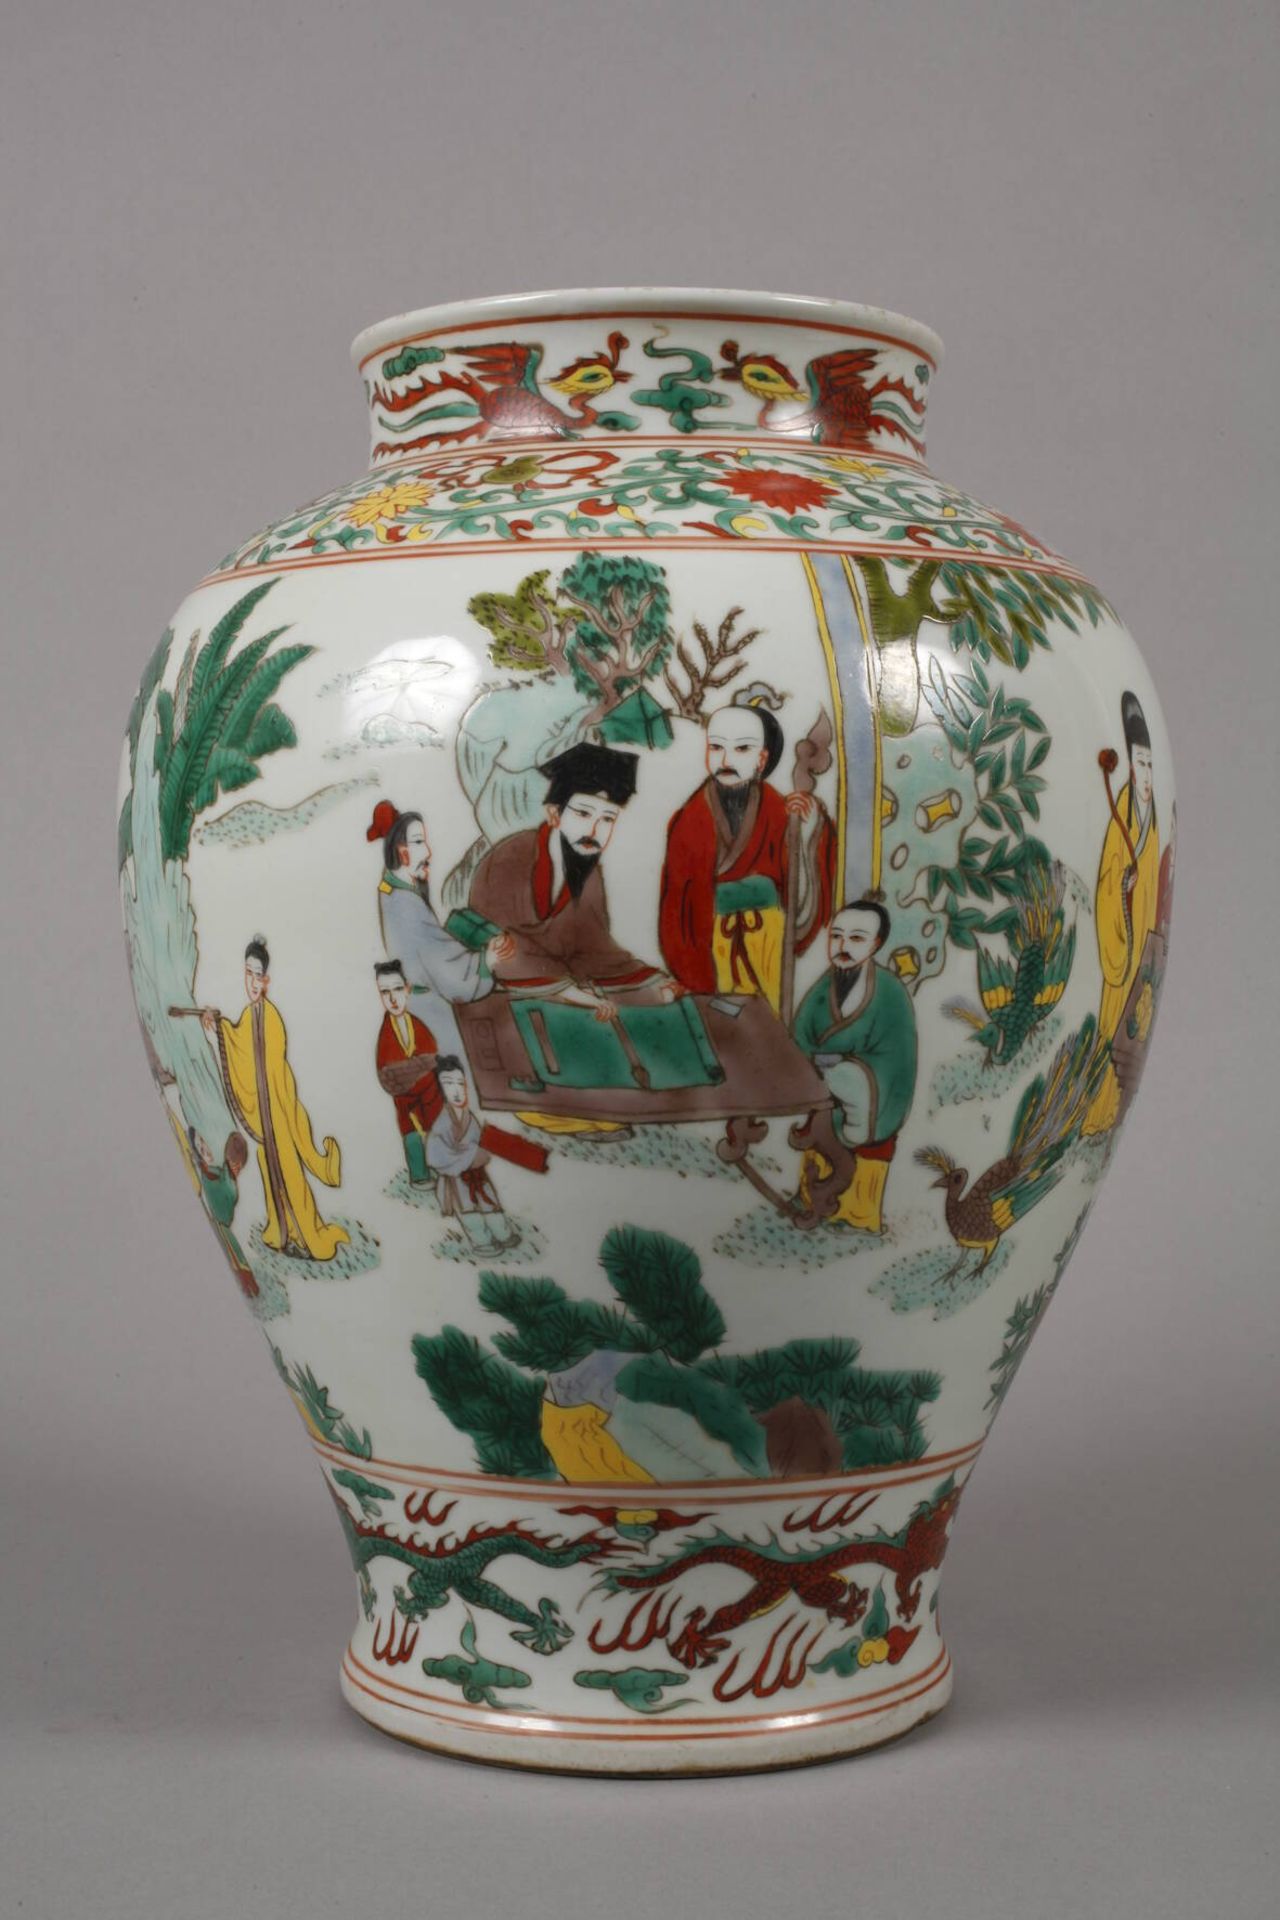 Vase Famille verte 19. Jh., ungemarkt, signiert, weiß glasiertes Porzellan in polychromer - Image 3 of 6